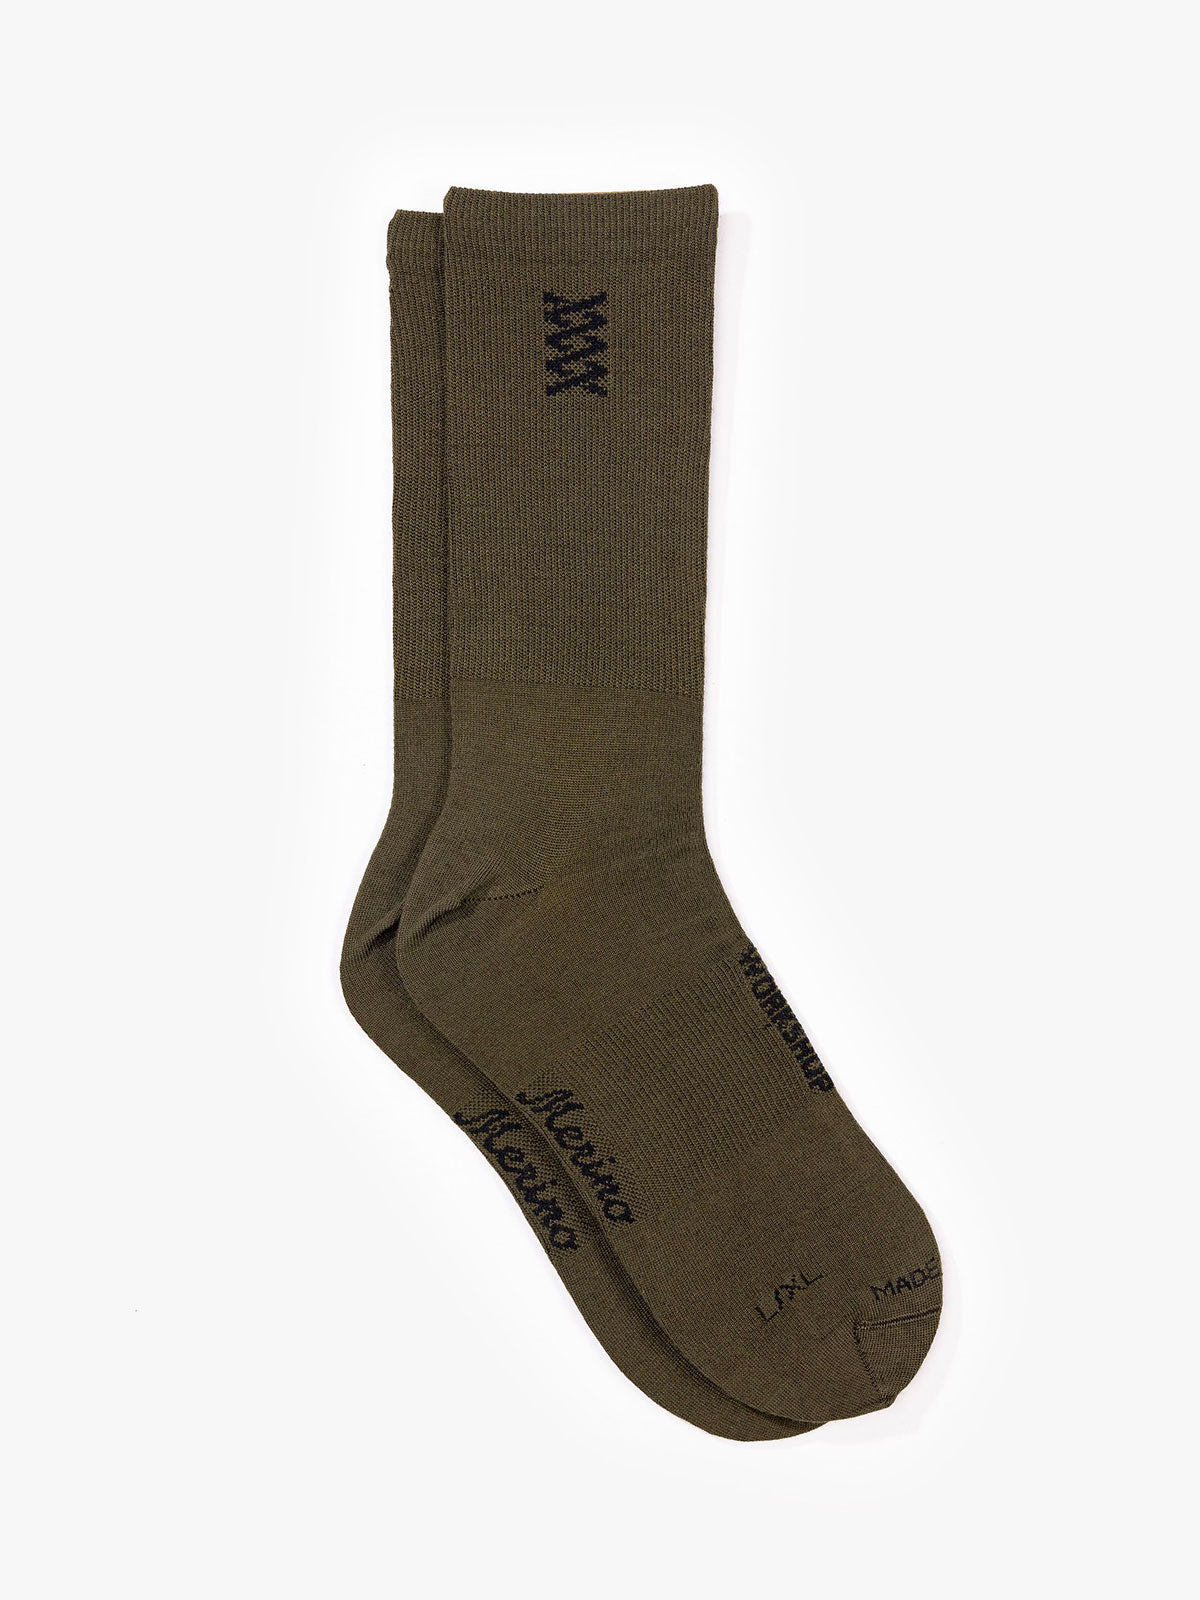 Mission Pro Wool Socks från Mission Workshop - Väderbeständiga väskor och tekniska kläder - San Francisco och Los Angeles - Byggda för att tåla - Garanterade för alltid